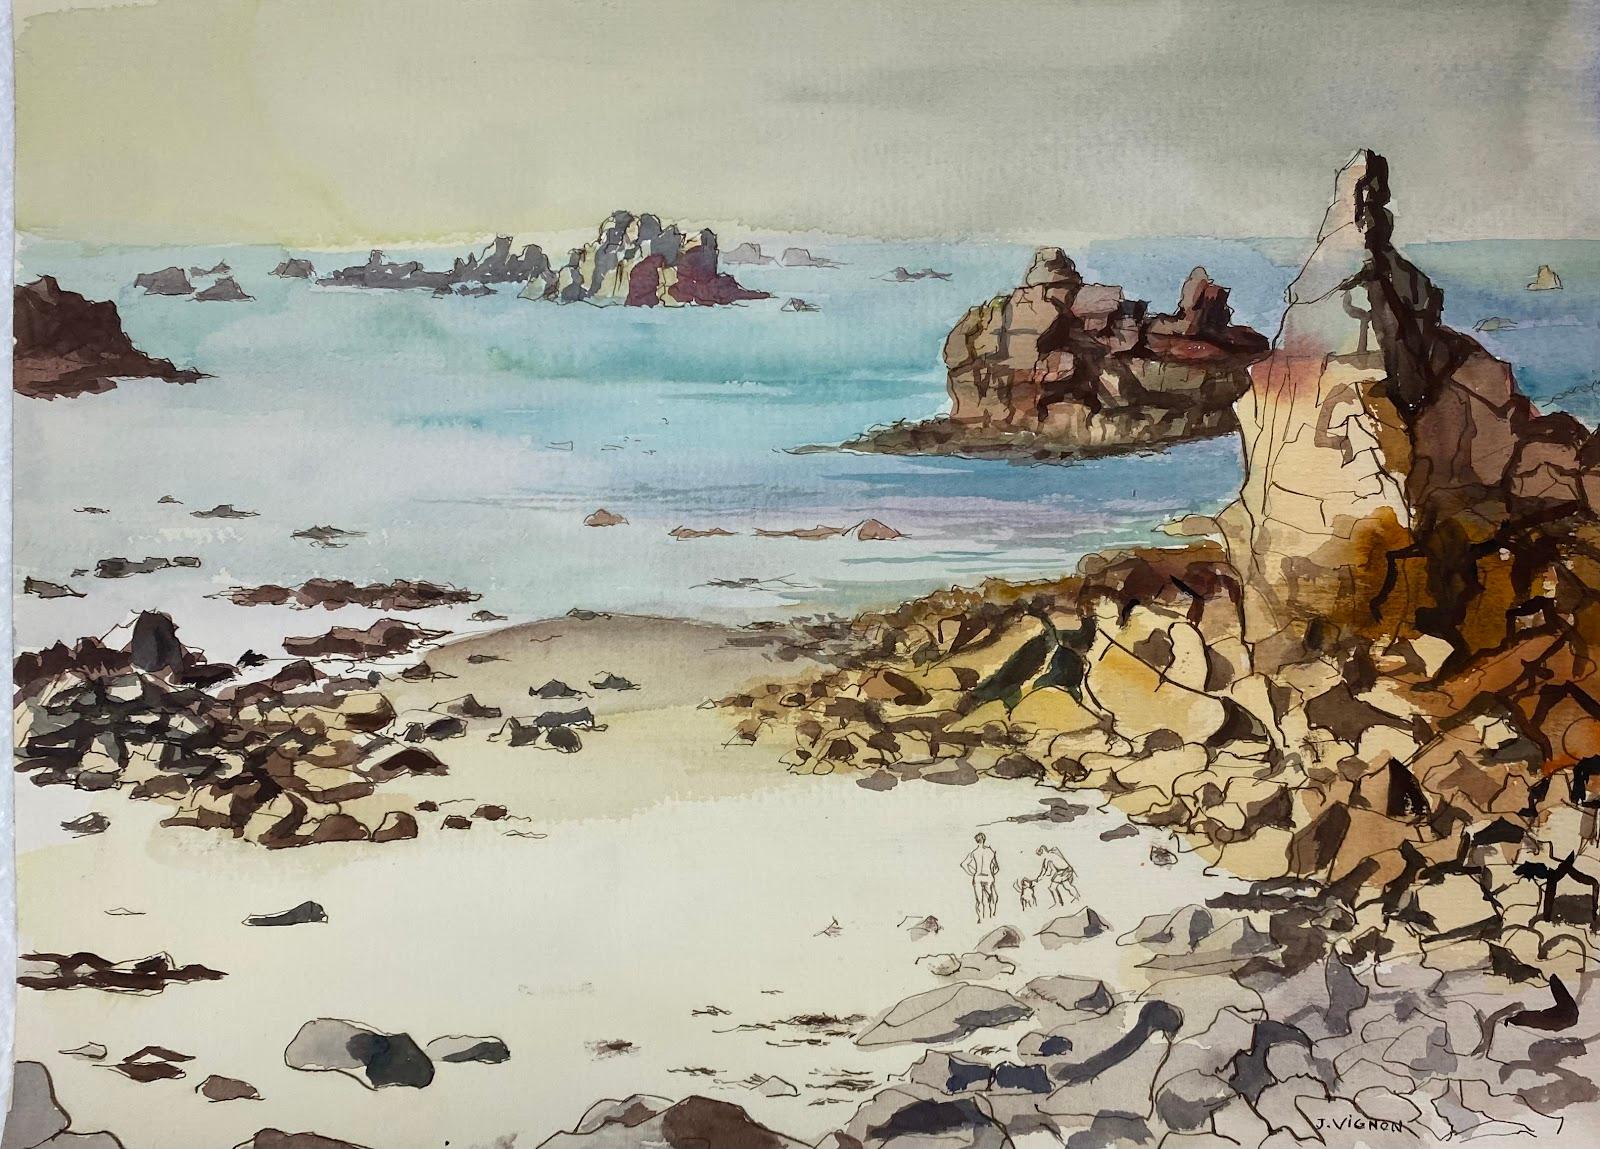 Josine Vignon Landscape Art - Post-Impressionist Watercolour Painting Rocky Shore & Blue Sea Coastal Landscape